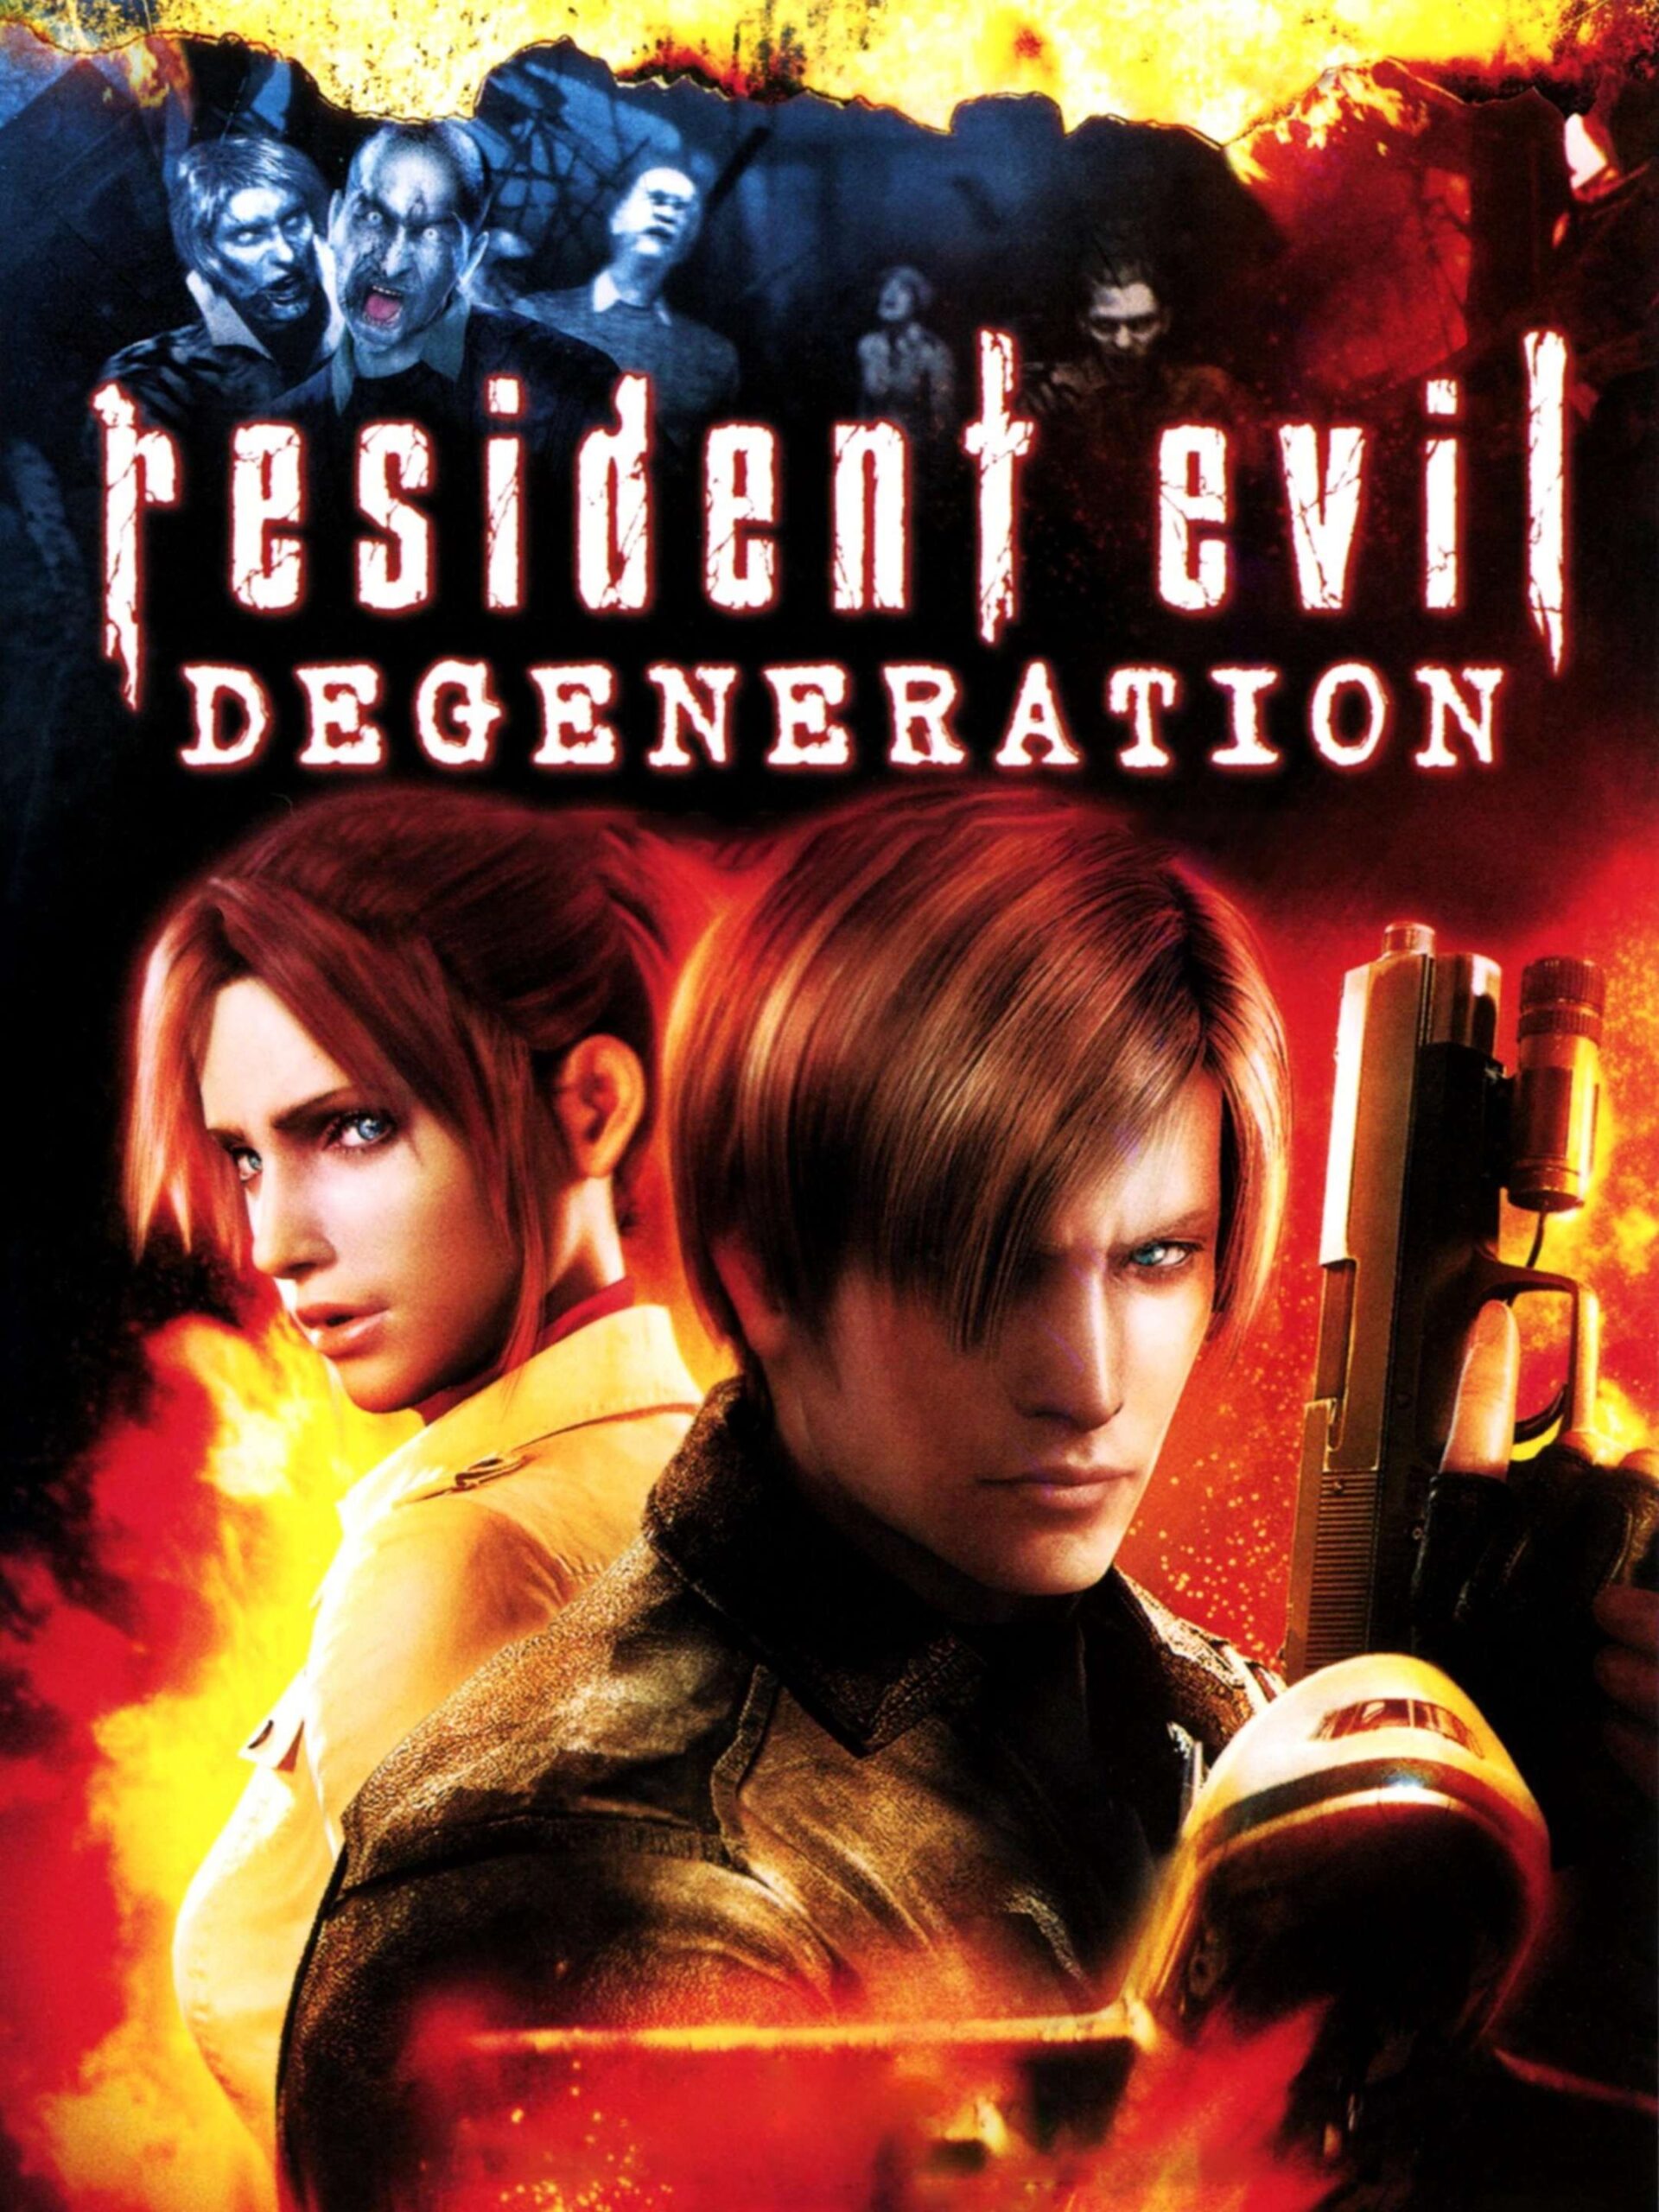 Resident Evil Degeneration (2012) - Based On Resident Evil Games